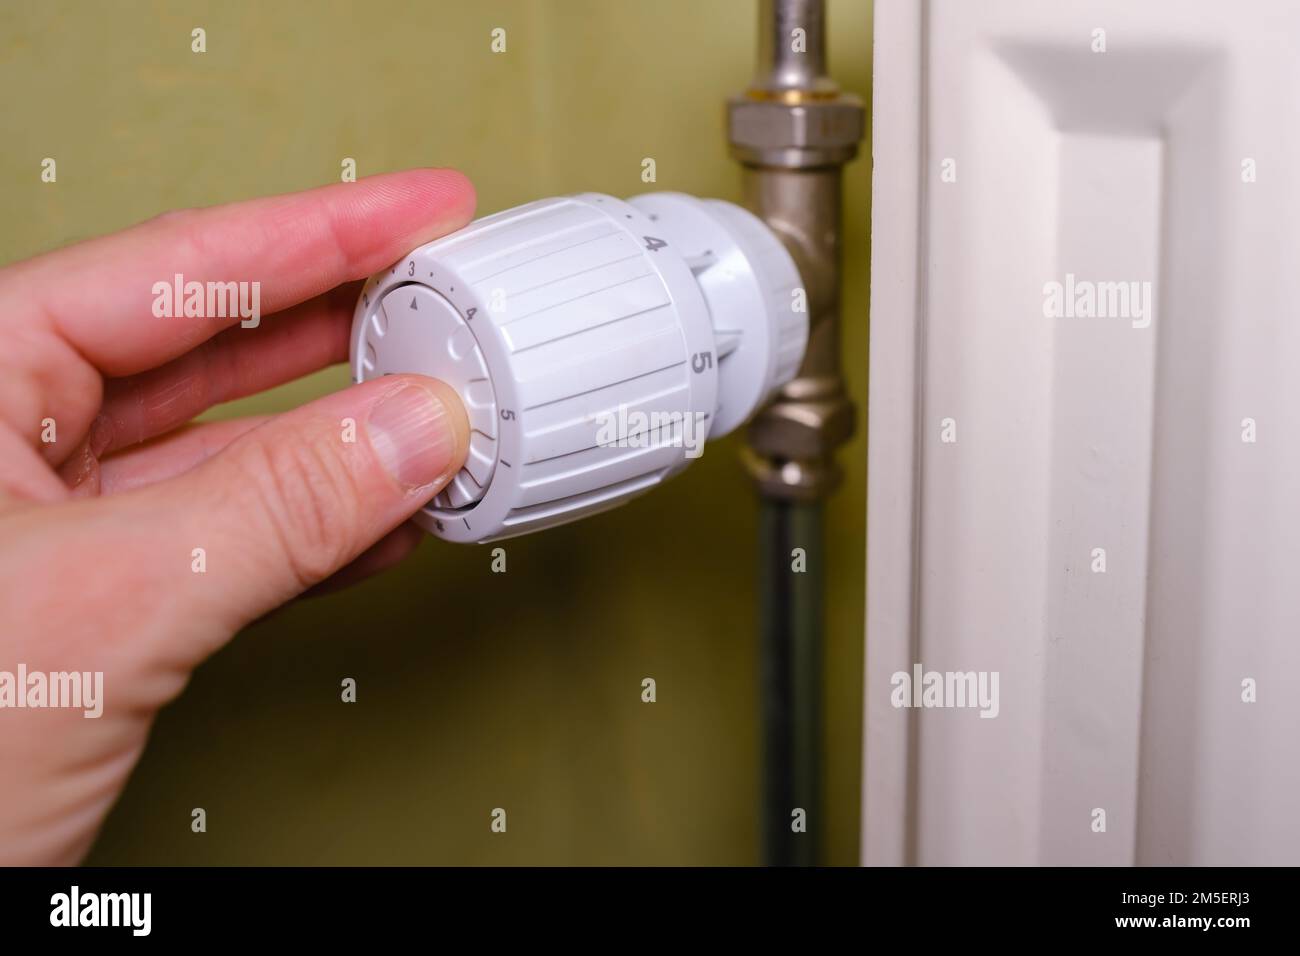 Augmentation des coûts de chauffage en crise, l'homme règle la température à la maison avec le thermostat de chauffage pour économiser l'énergie, gros plan Banque D'Images